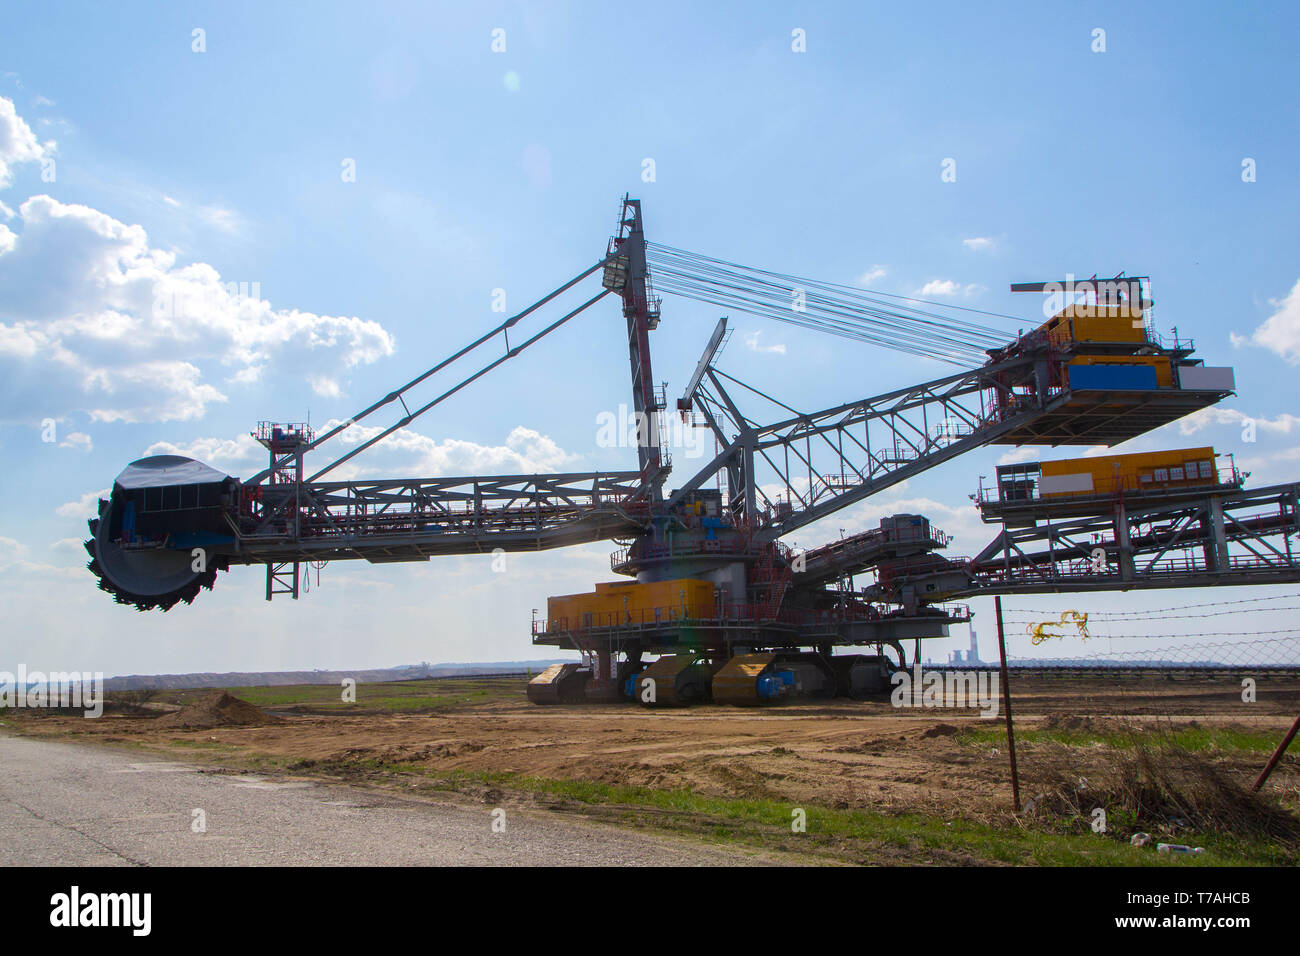 Ein braunkohletagebau Mine mit einem riesigen schaufelradbagger, einer der weltweit größten beweglichen land Fahrzeuge - Bild Stockfoto